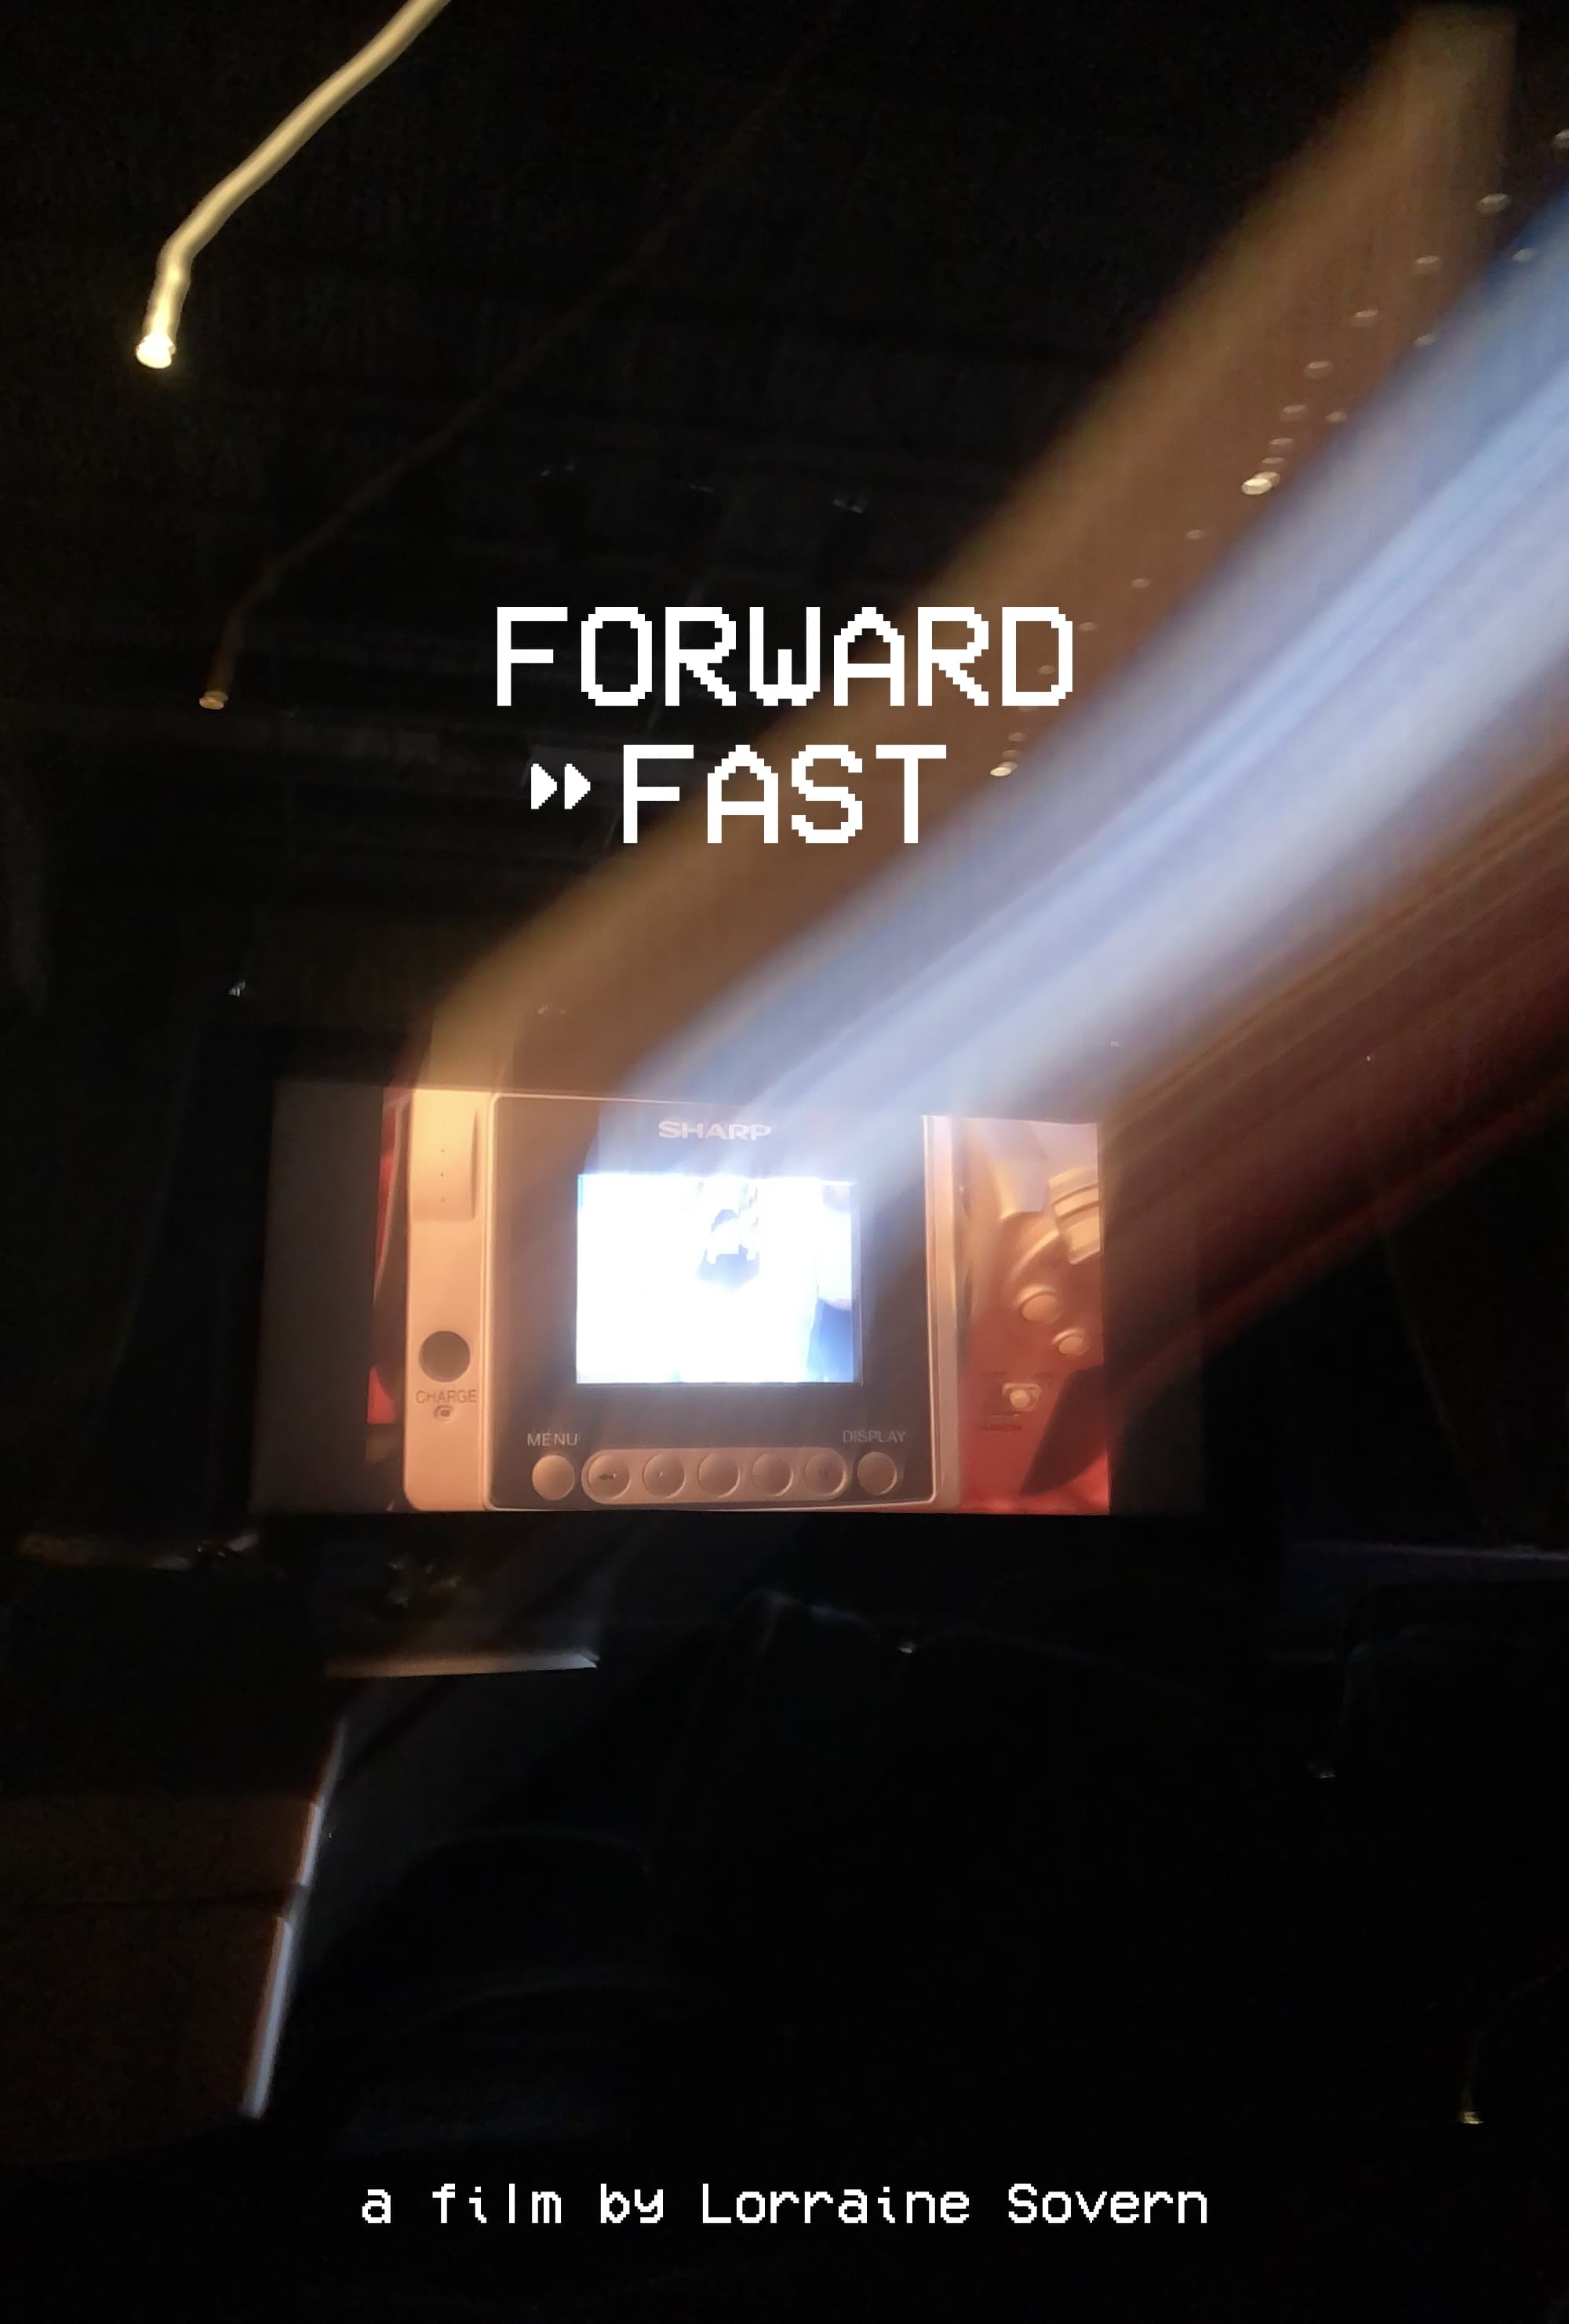 Forward Fast